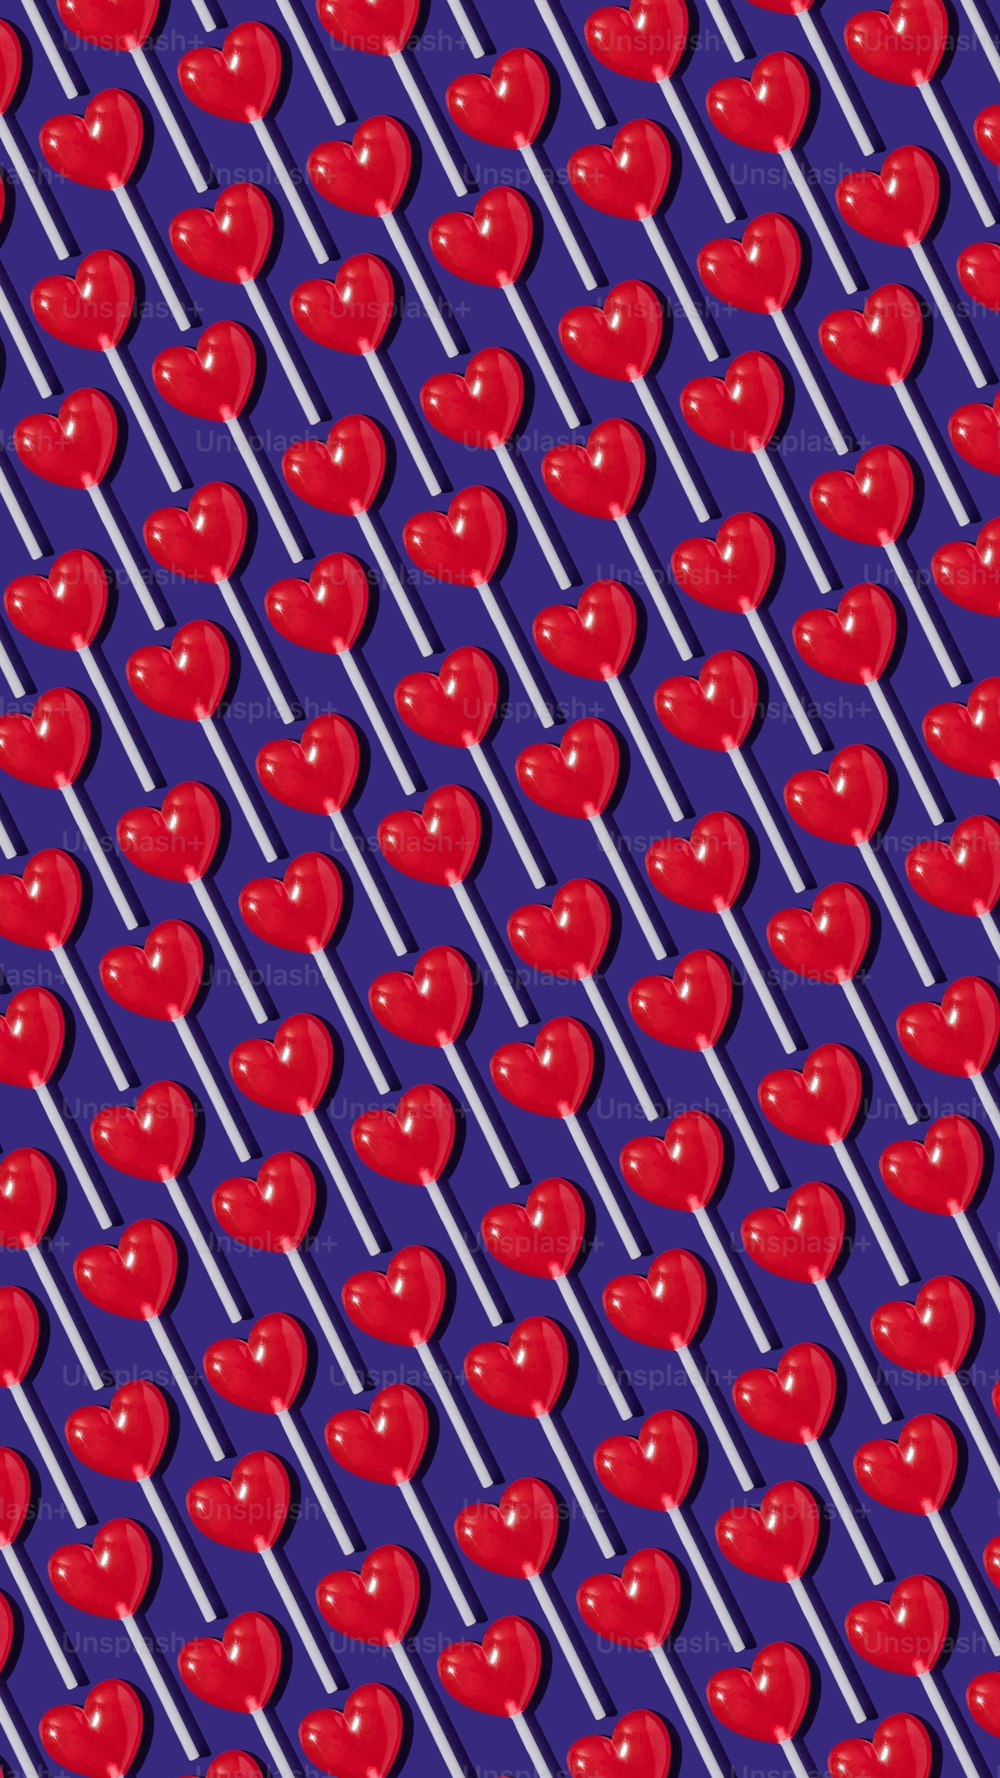 보라색 배경에 빨간 사과의 패턴